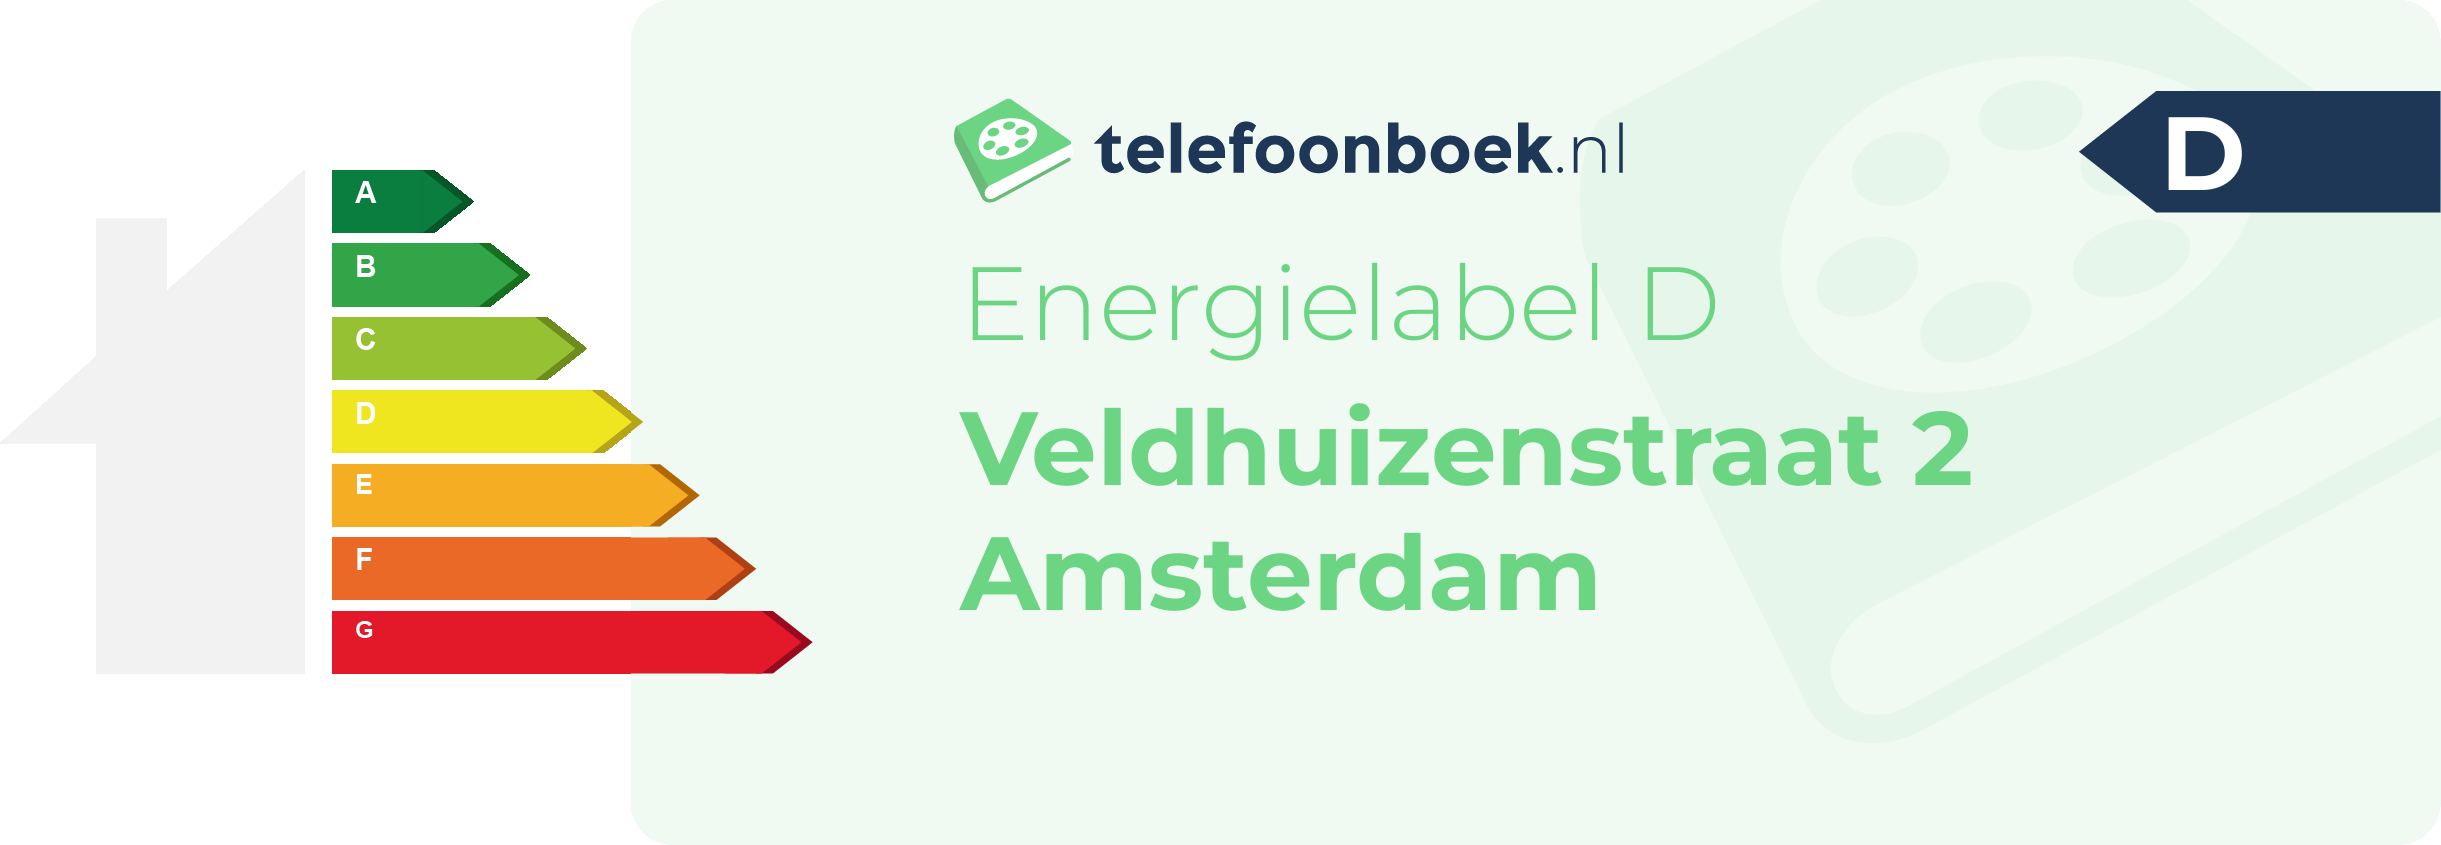 Energielabel Veldhuizenstraat 2 Amsterdam